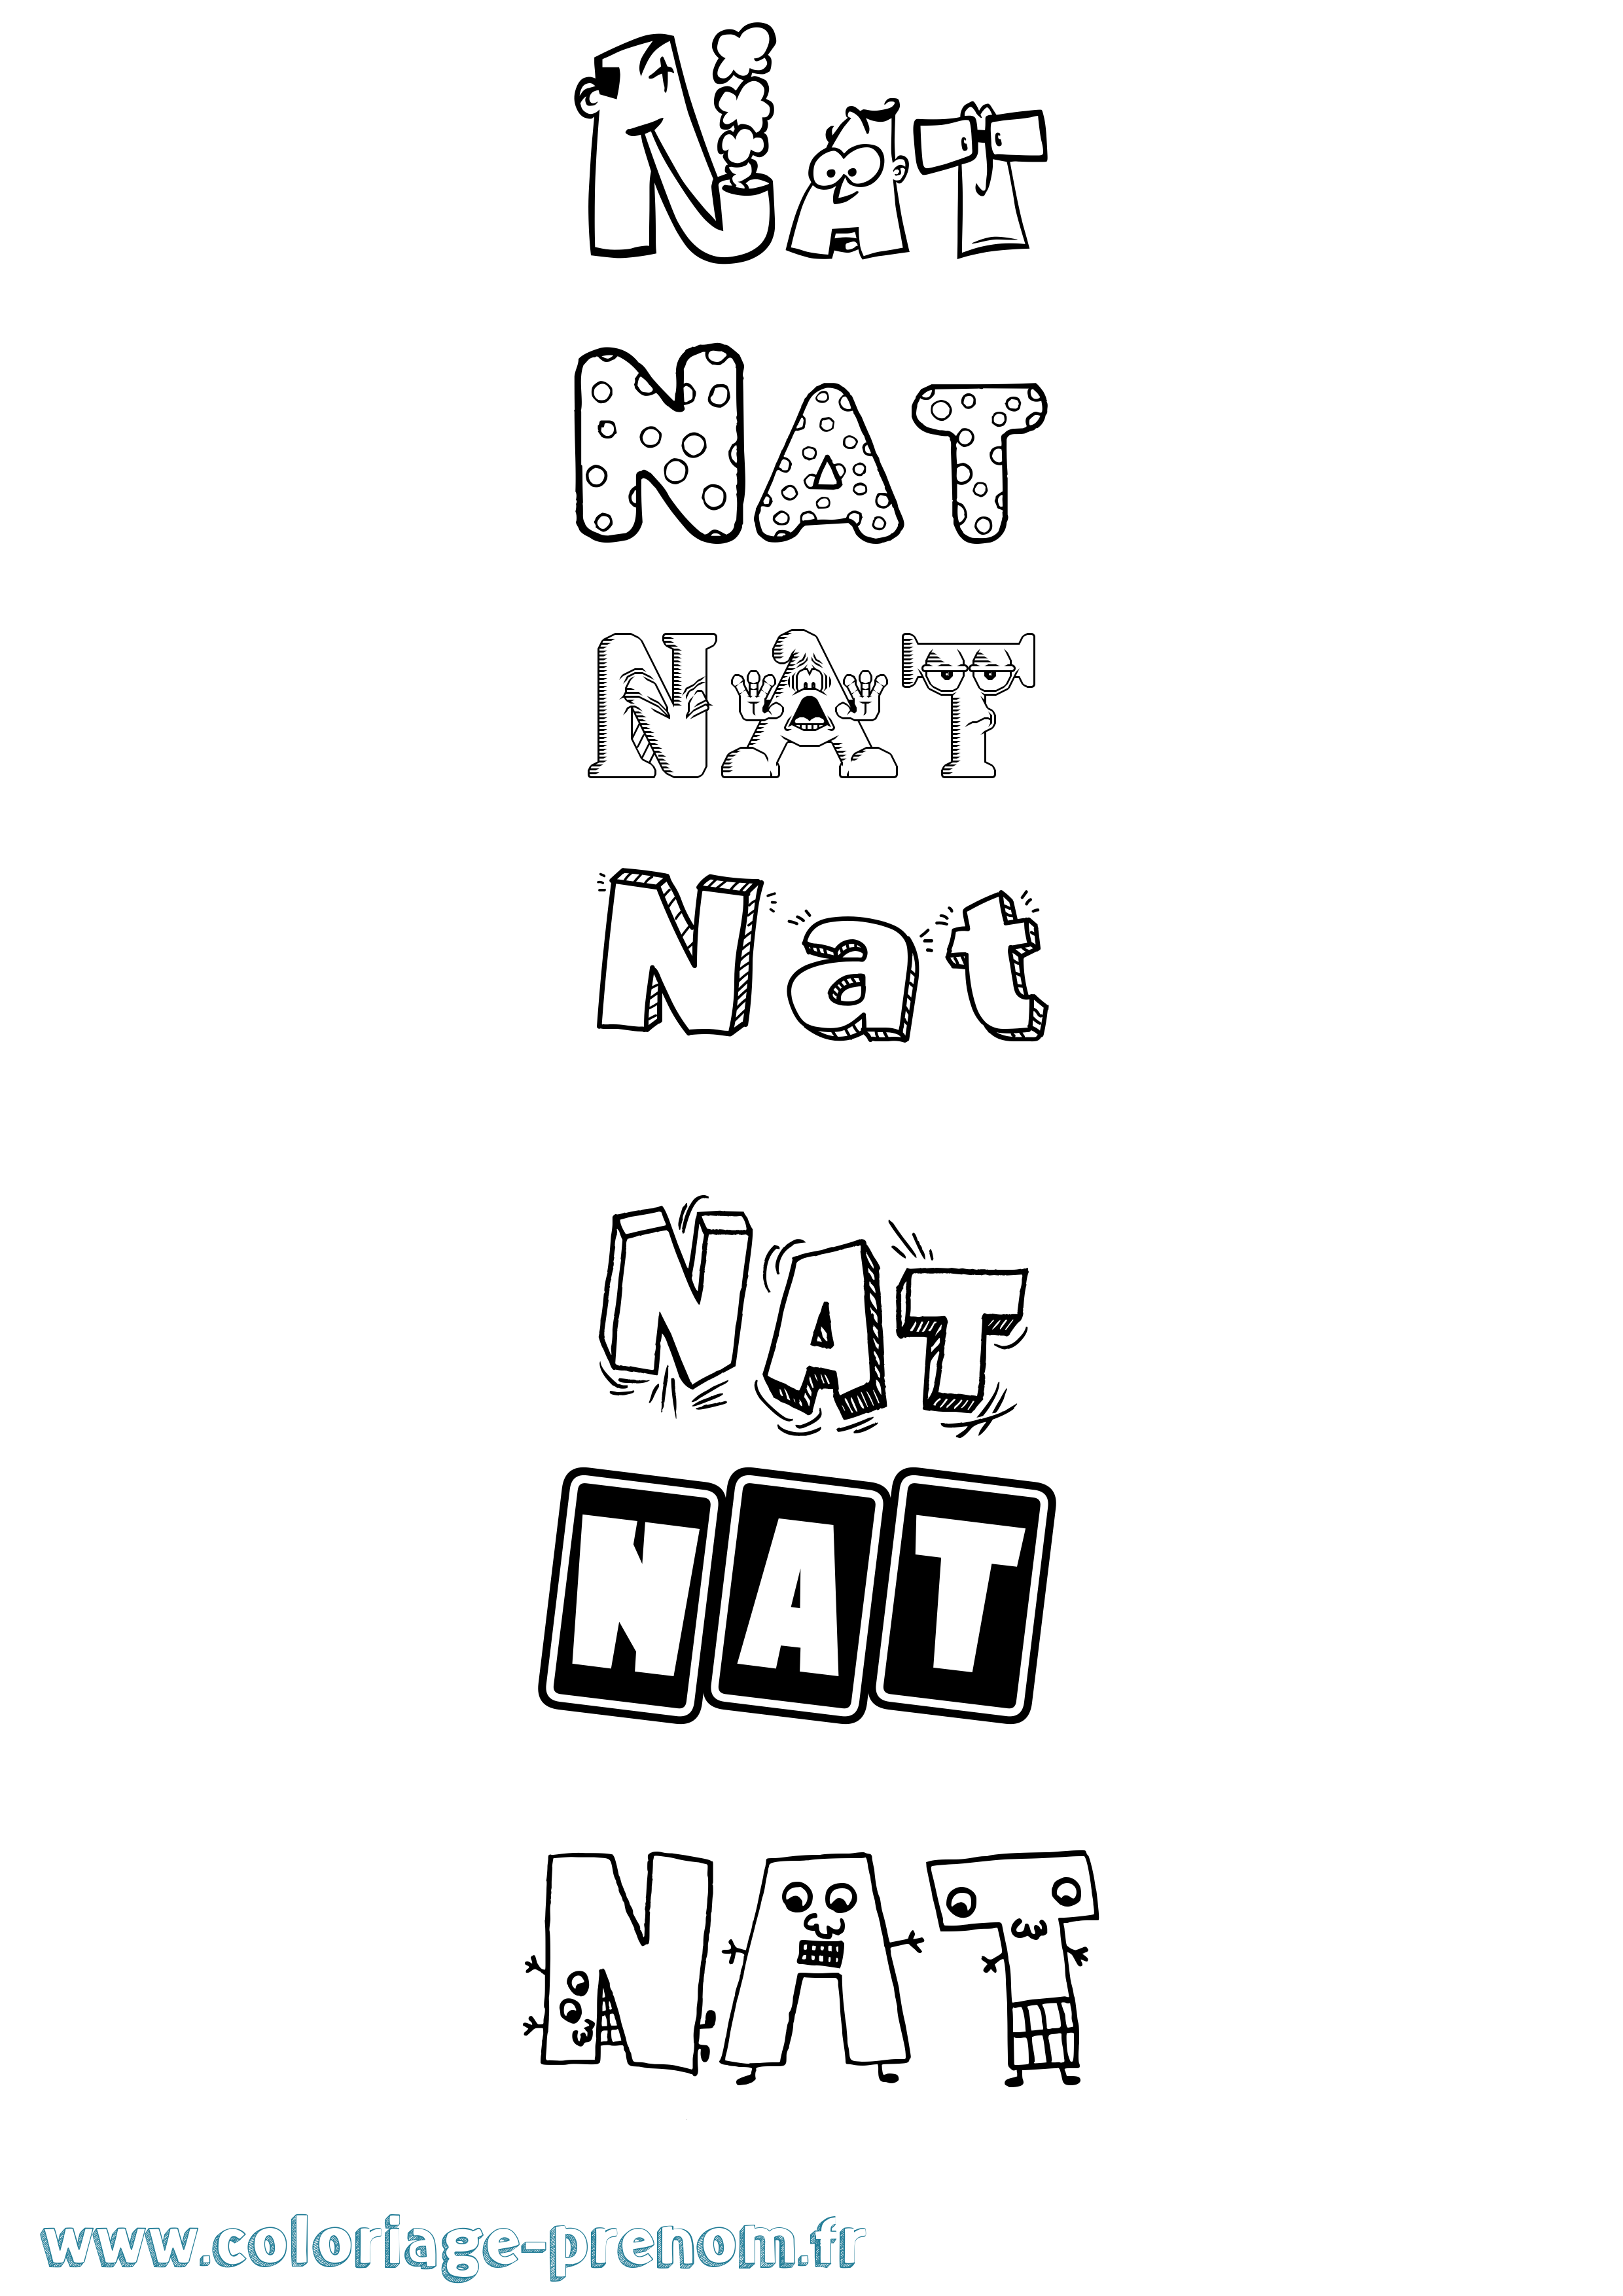 Coloriage prénom Nat Fun